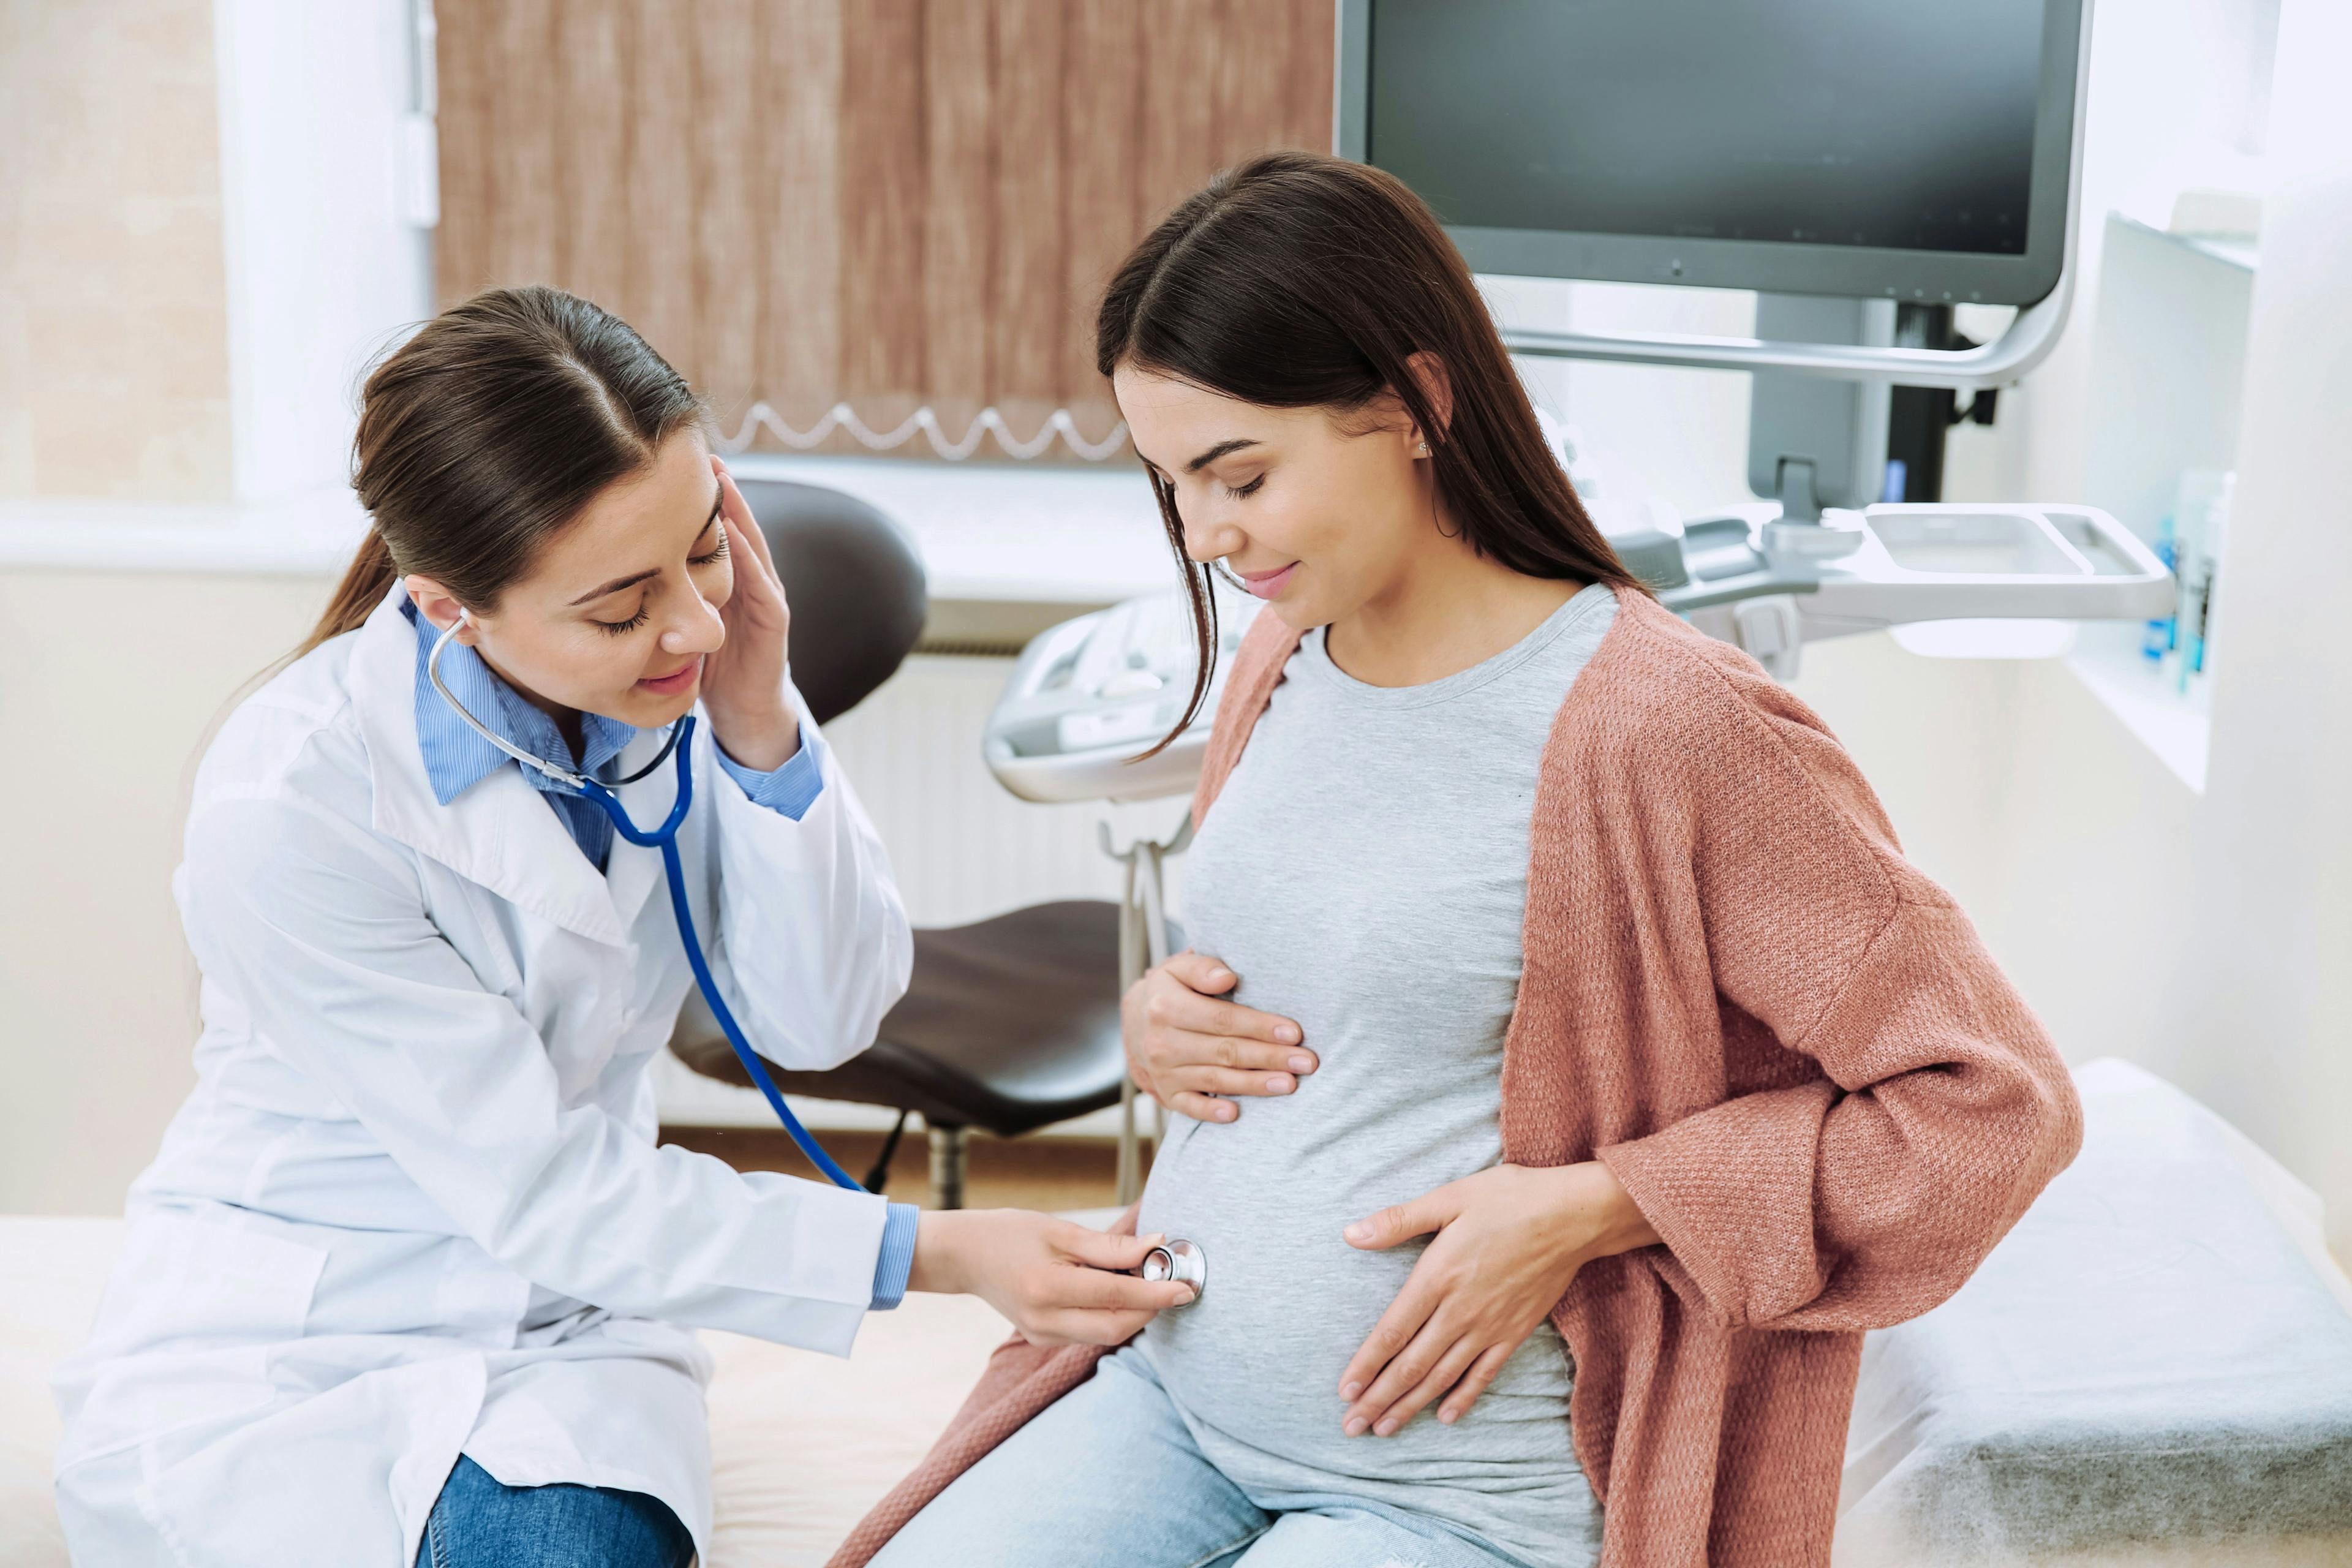 Blood Pressure Can Predict Adverse Pregnancy Outcomes